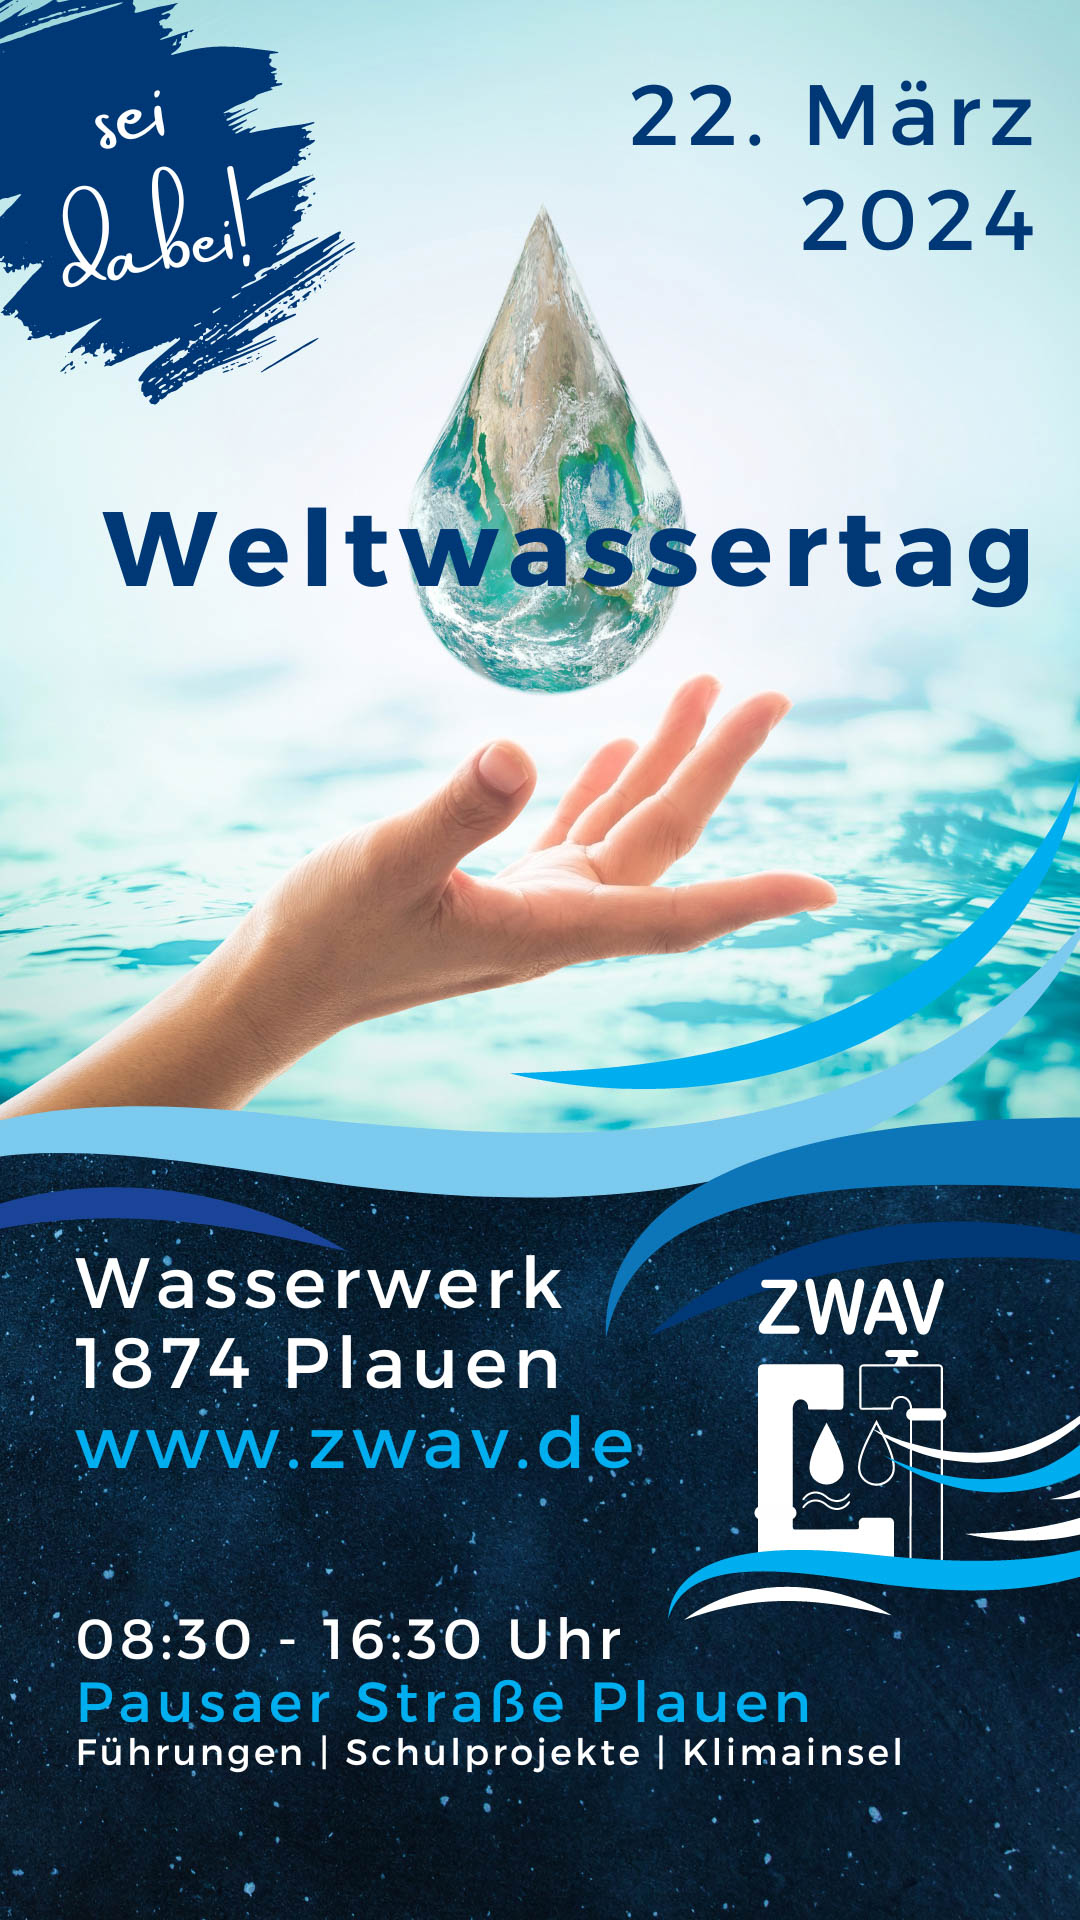 Weltwassertag am 22. März 2024 in Plauen - Sei dabei